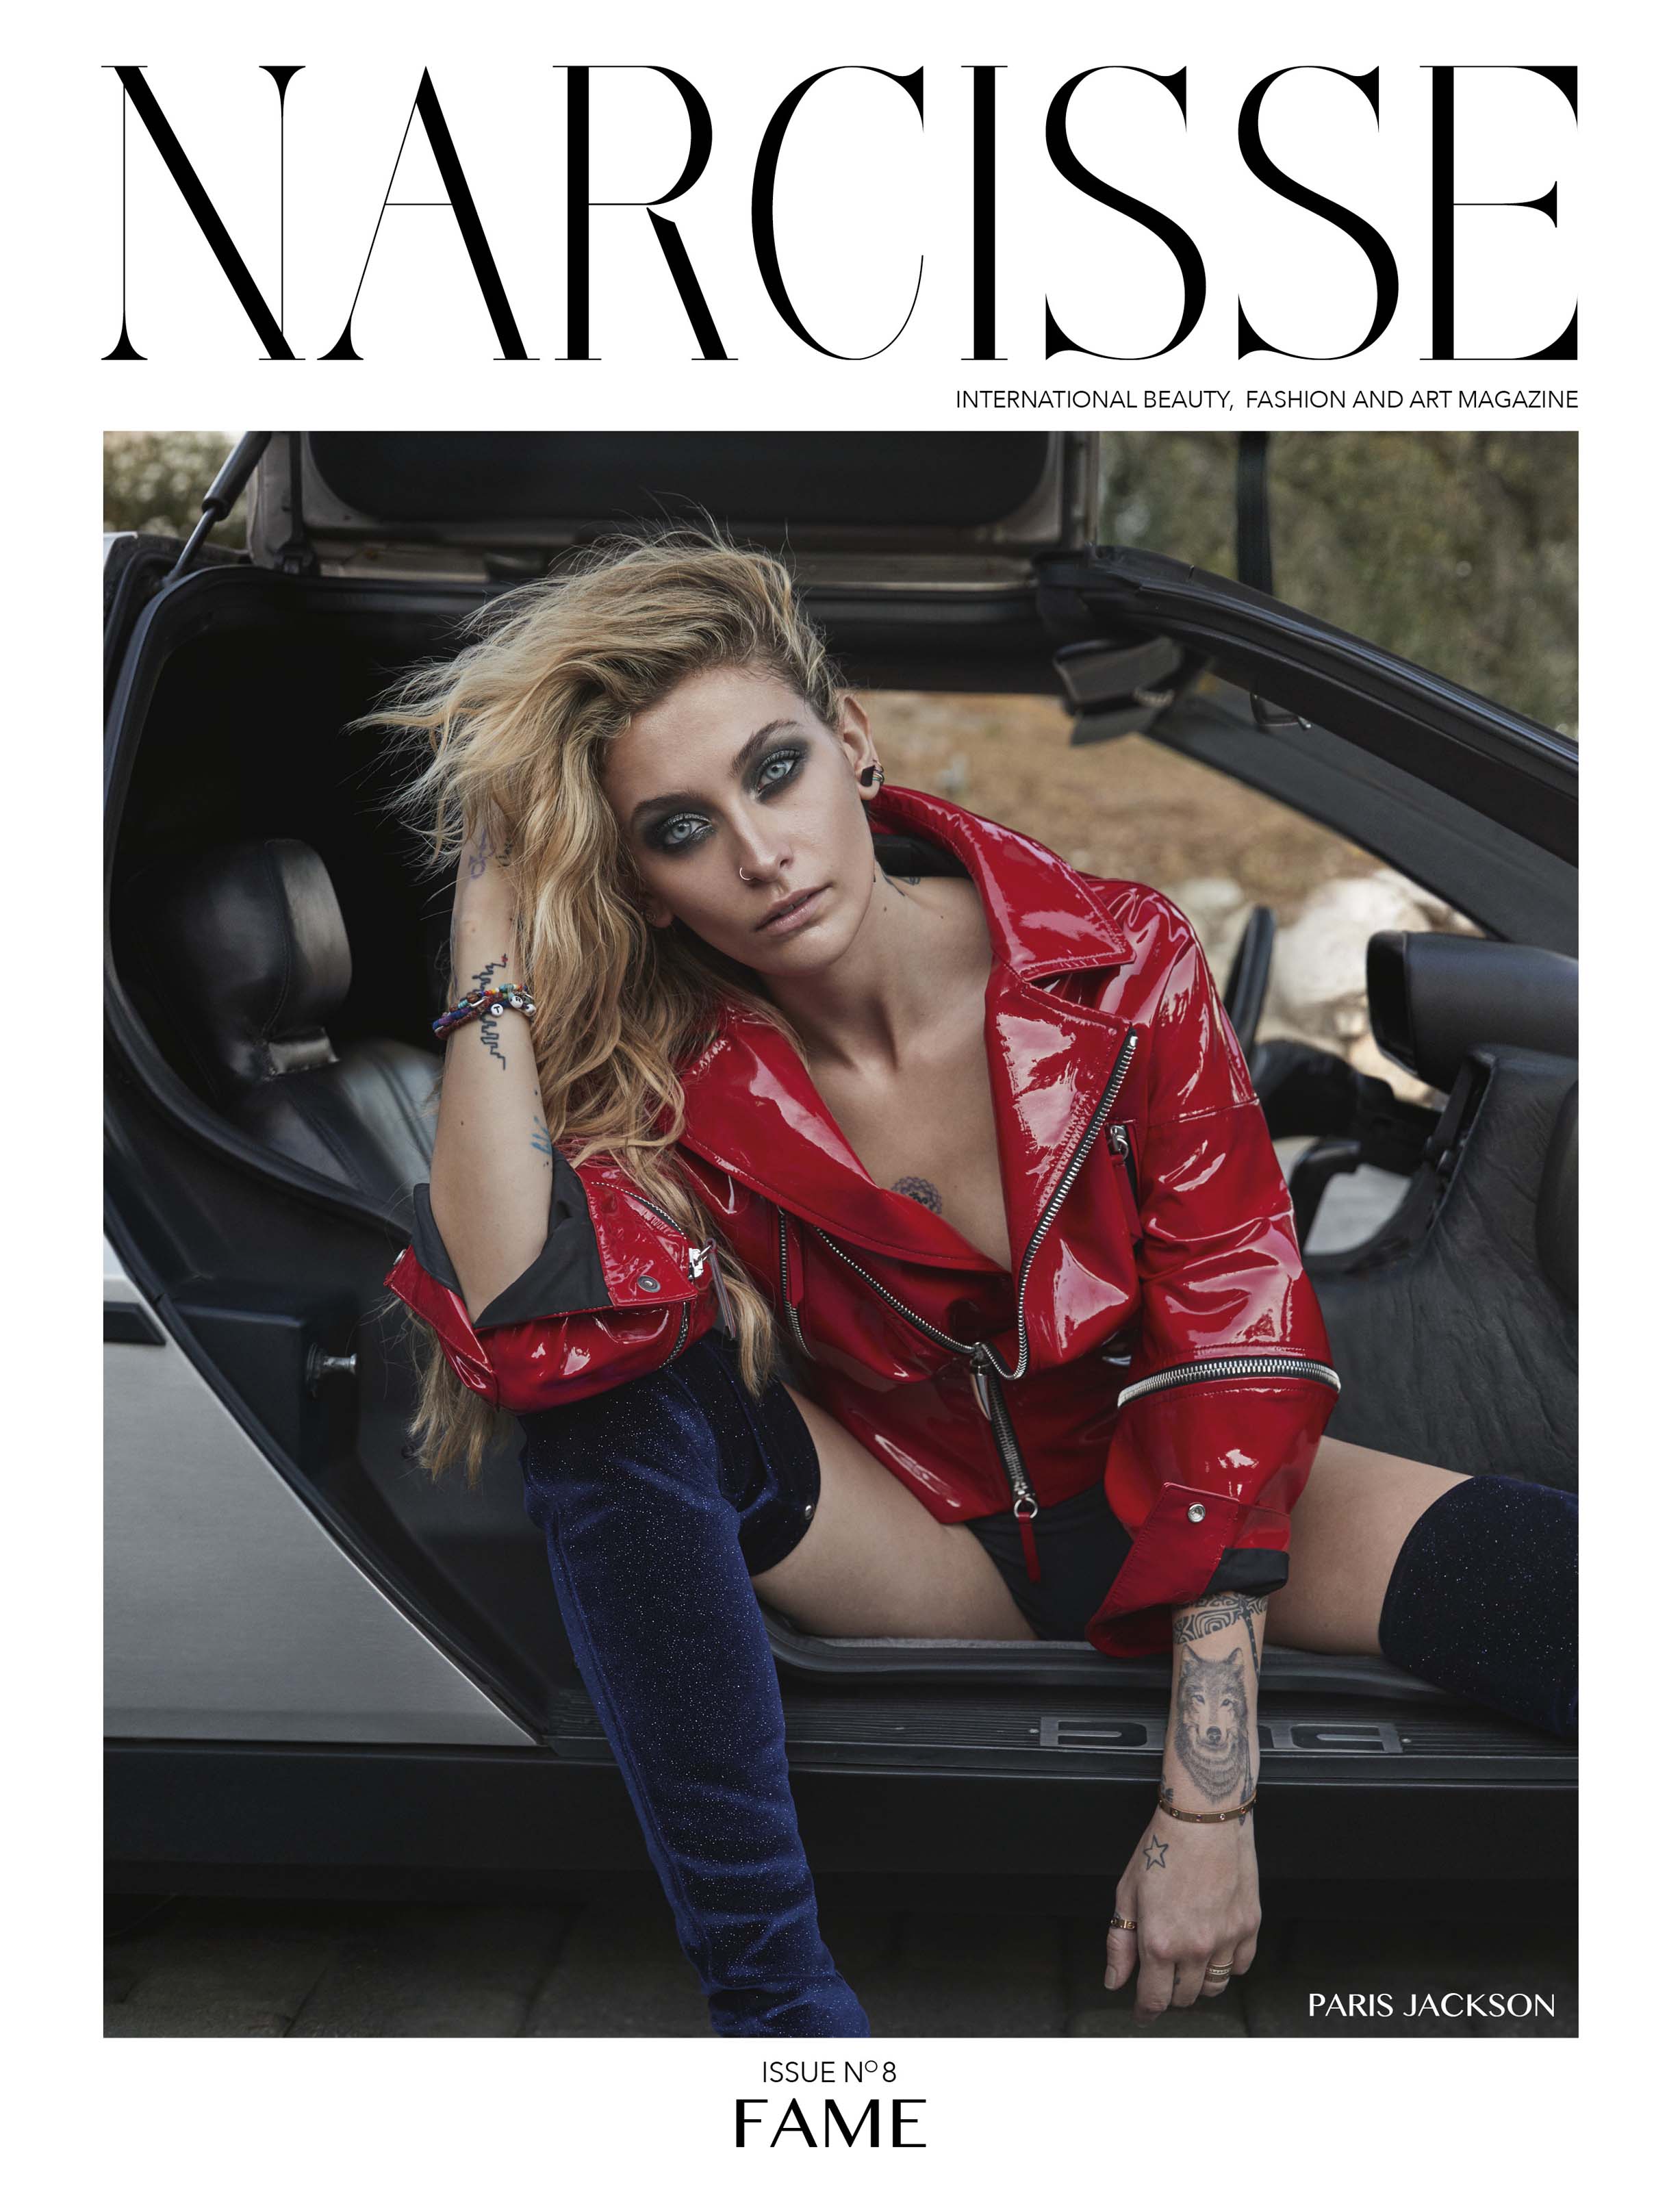 Paris Jackson attends Narcisse magazine